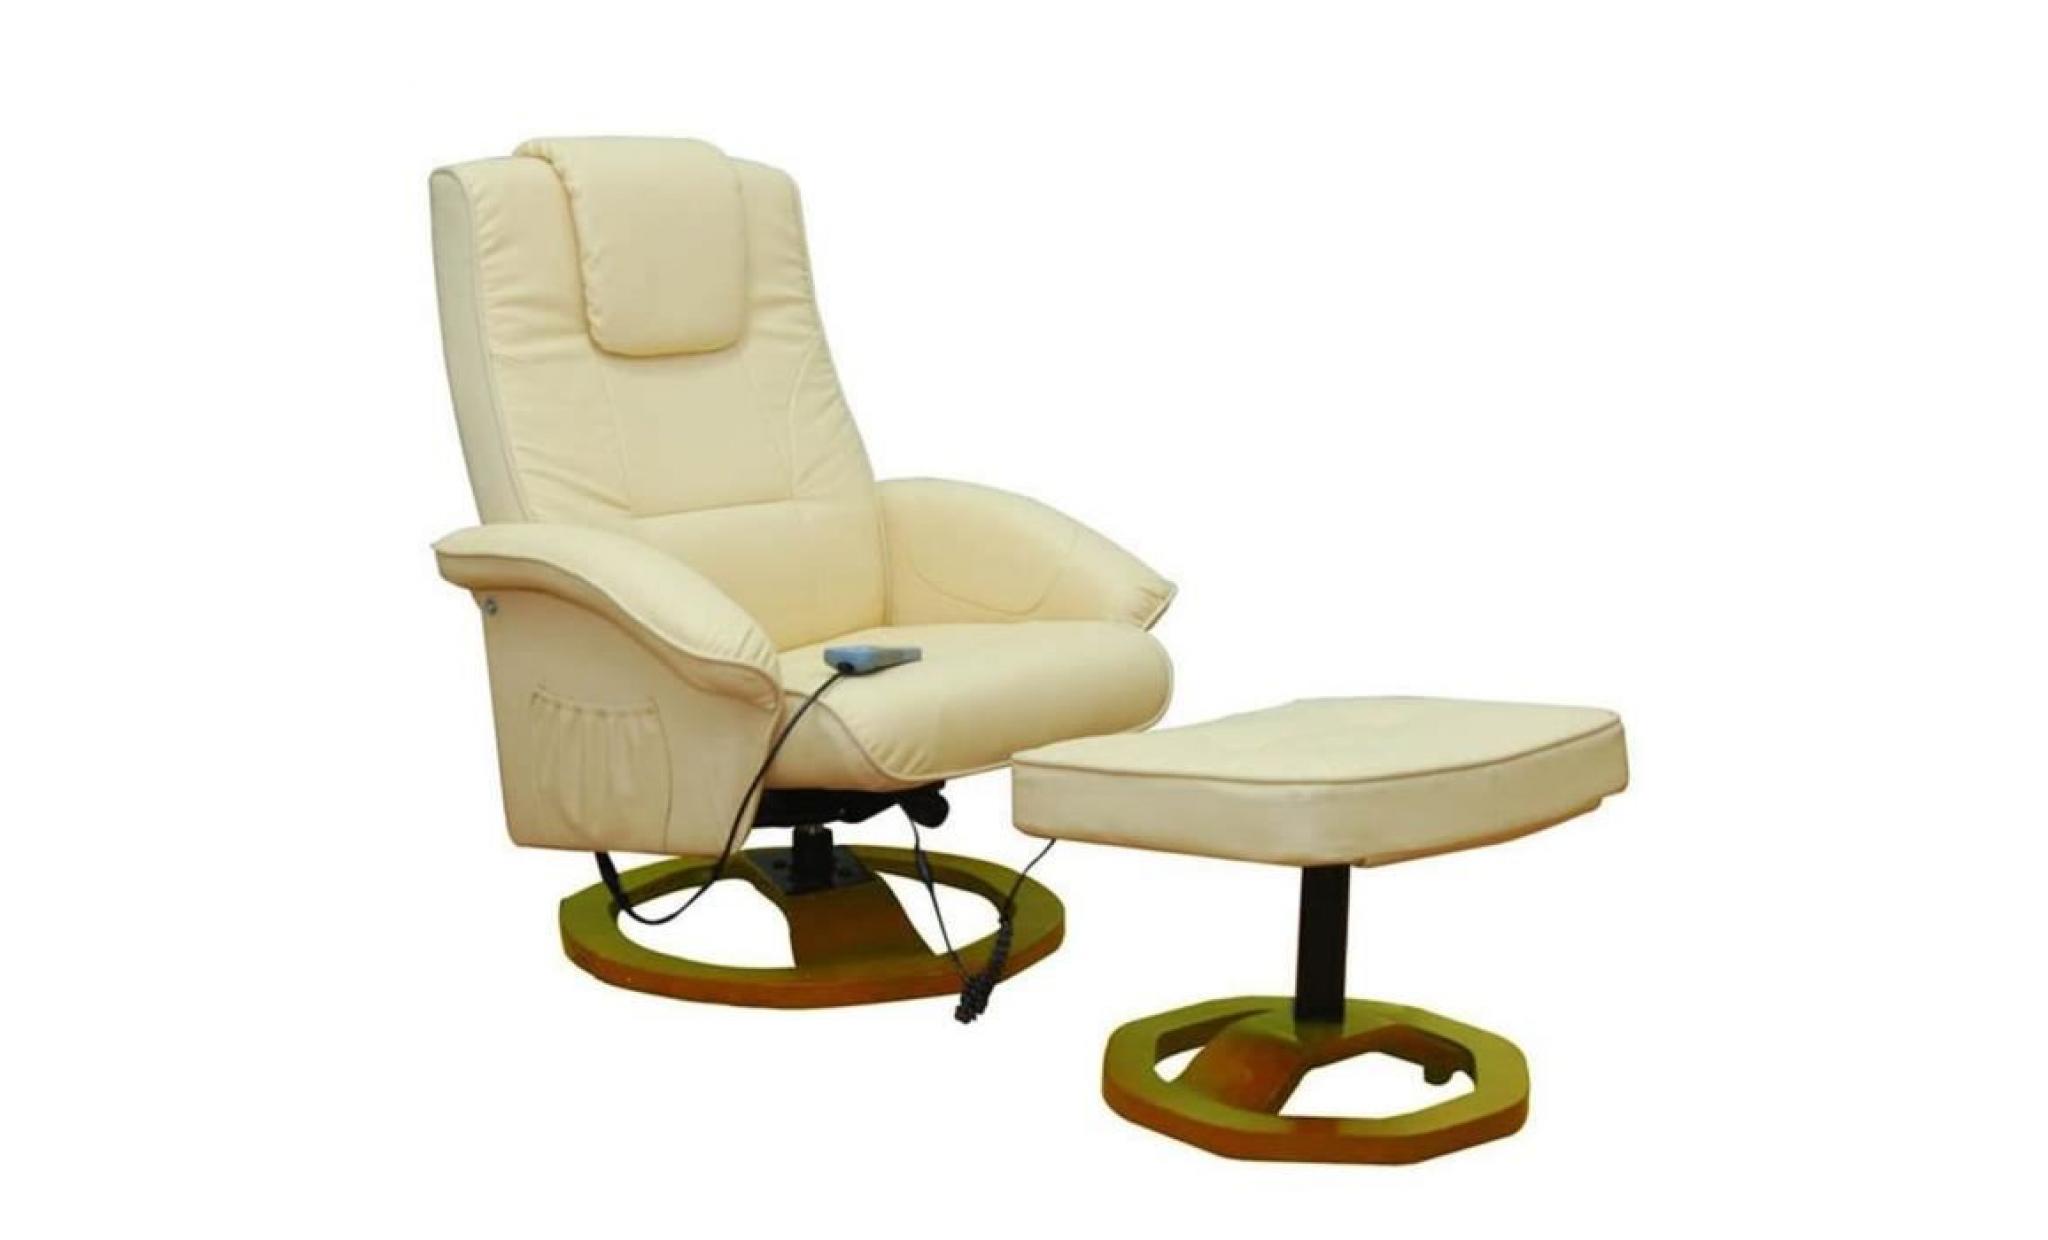 fauteuil beige massant avec repose pieds fauteuil de massage fauteuil de soins relaxant41 x 41 x 37 cm